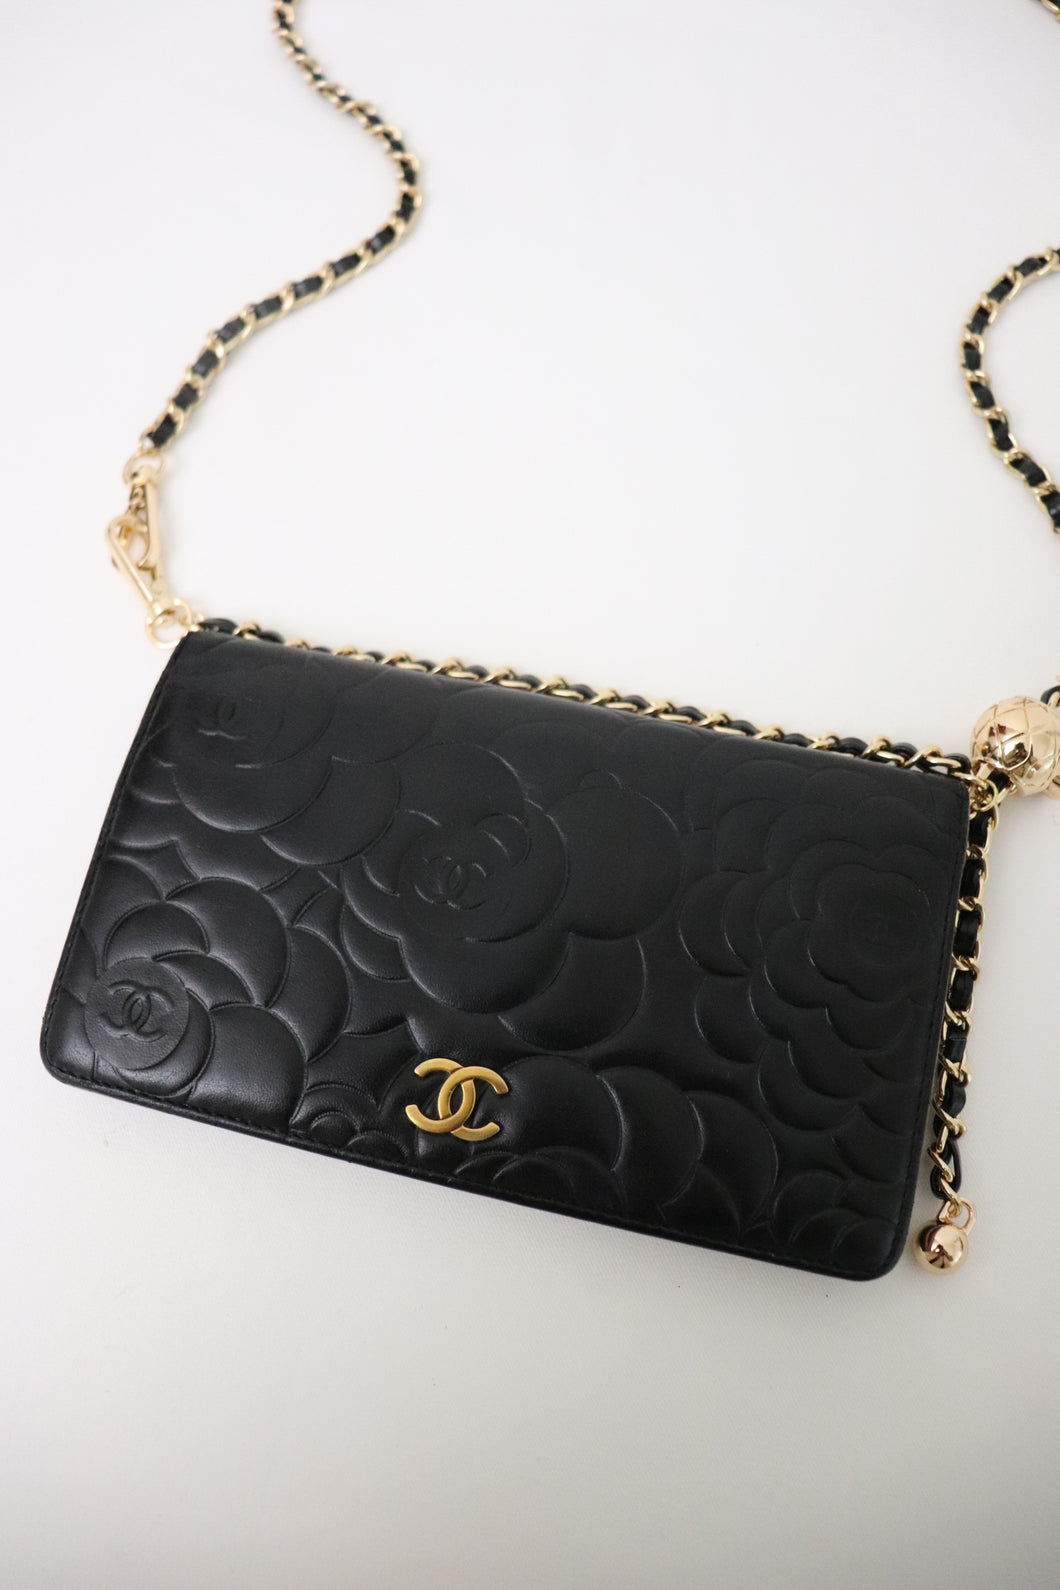 Chanel camellia wallet